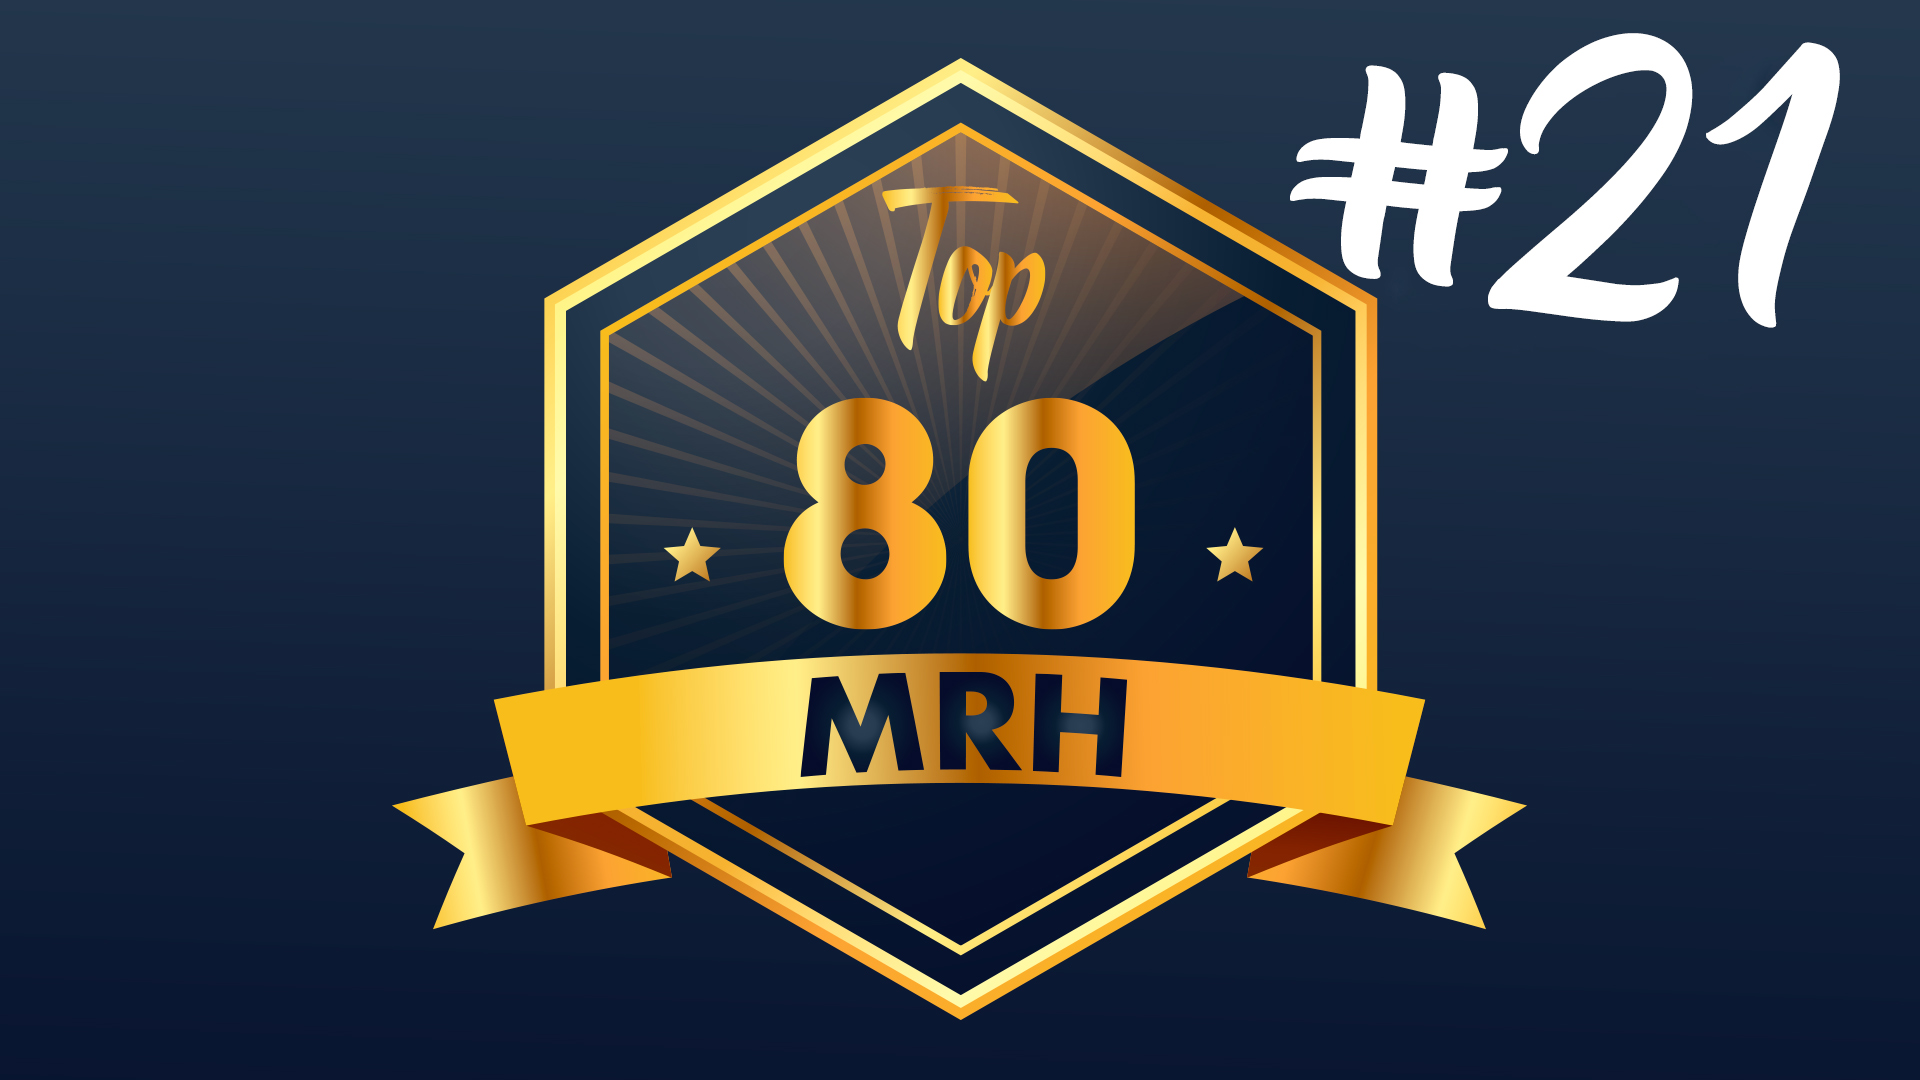 Top 80 MRH - Qui fera partie du 21e classement Top MRH